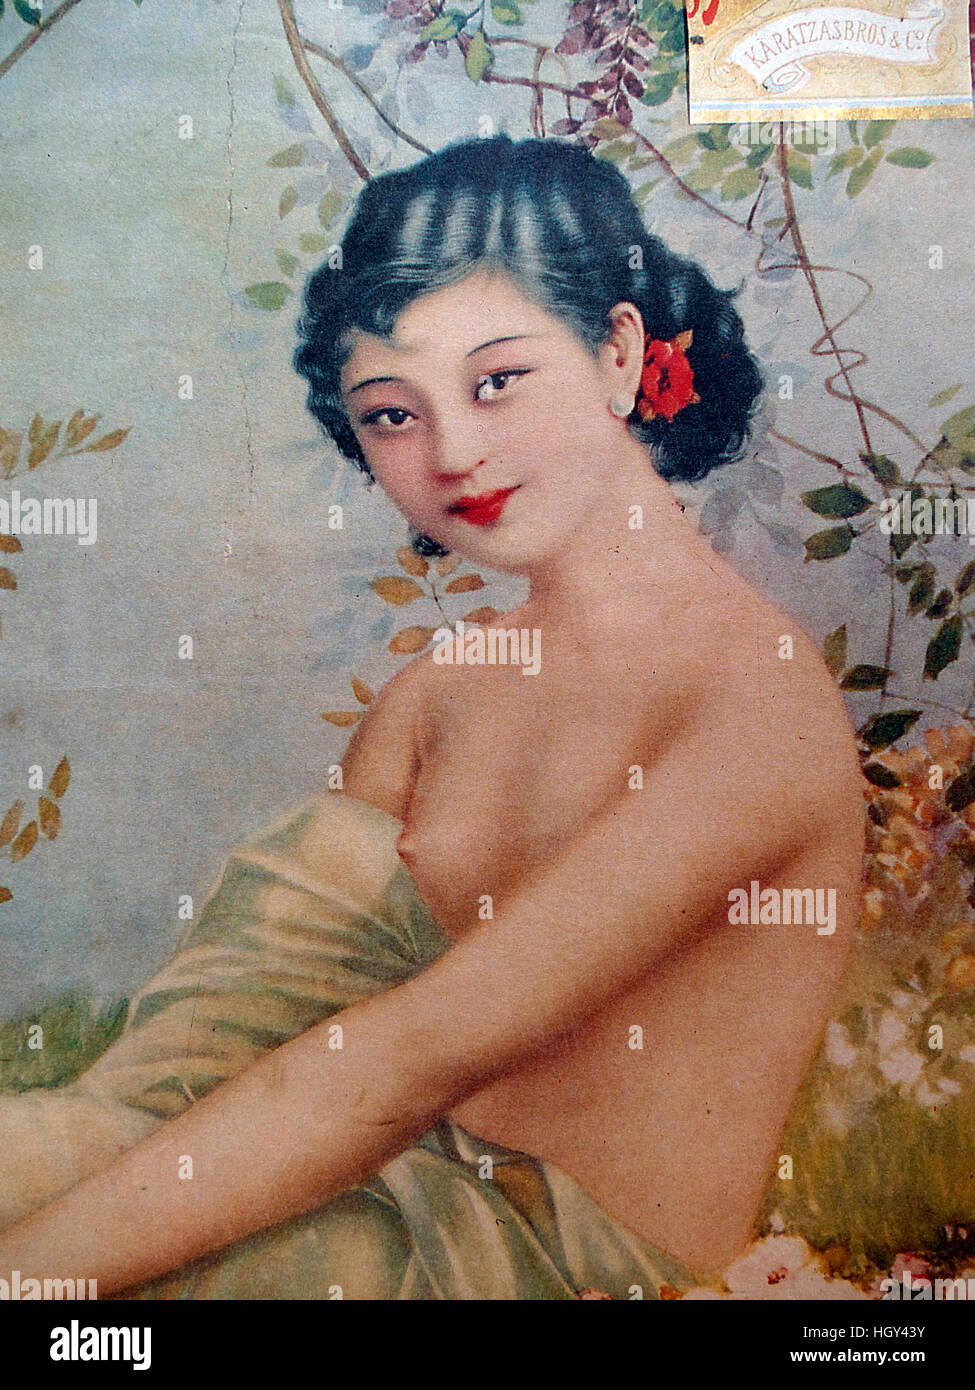 Nostalgische Vintage chinesischen Zigarette Poster Stockfoto